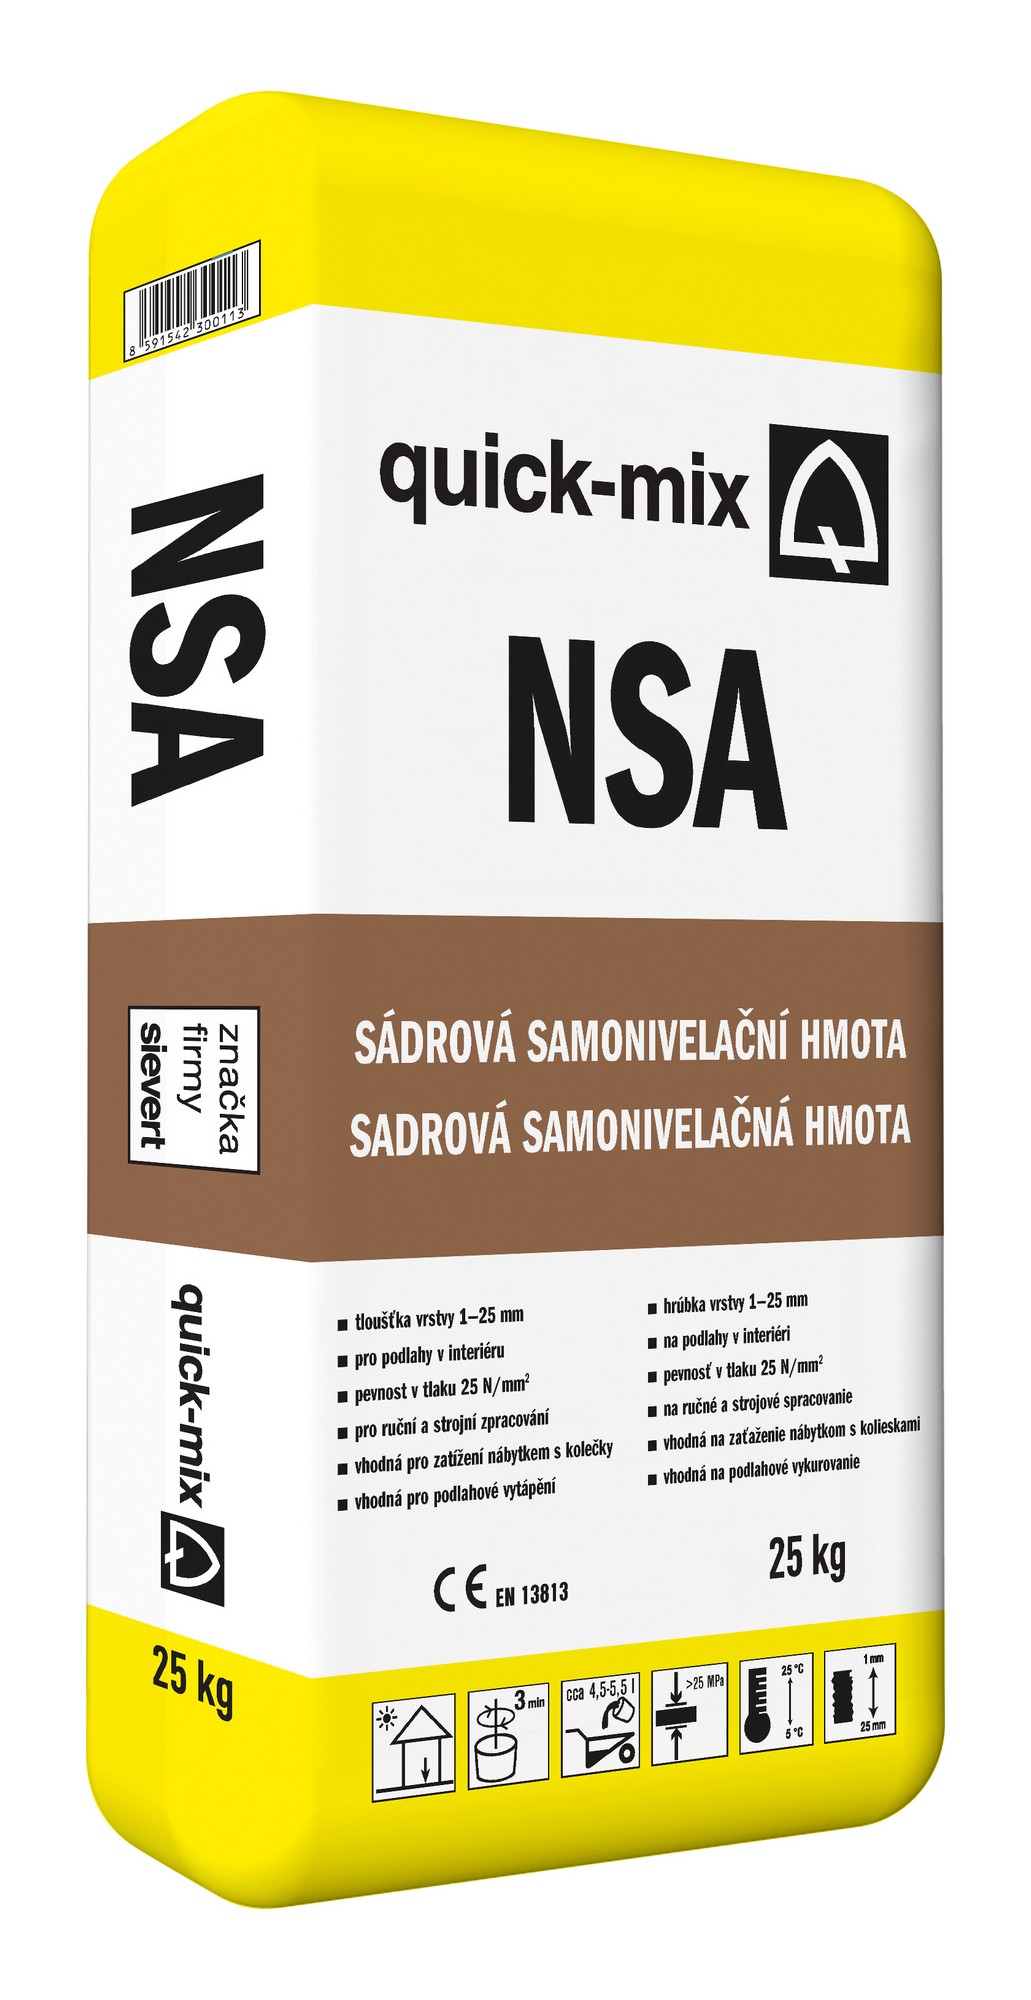 Hmota samonivelační Sakret/Quick-mix NSA 25 kg Quick-mix